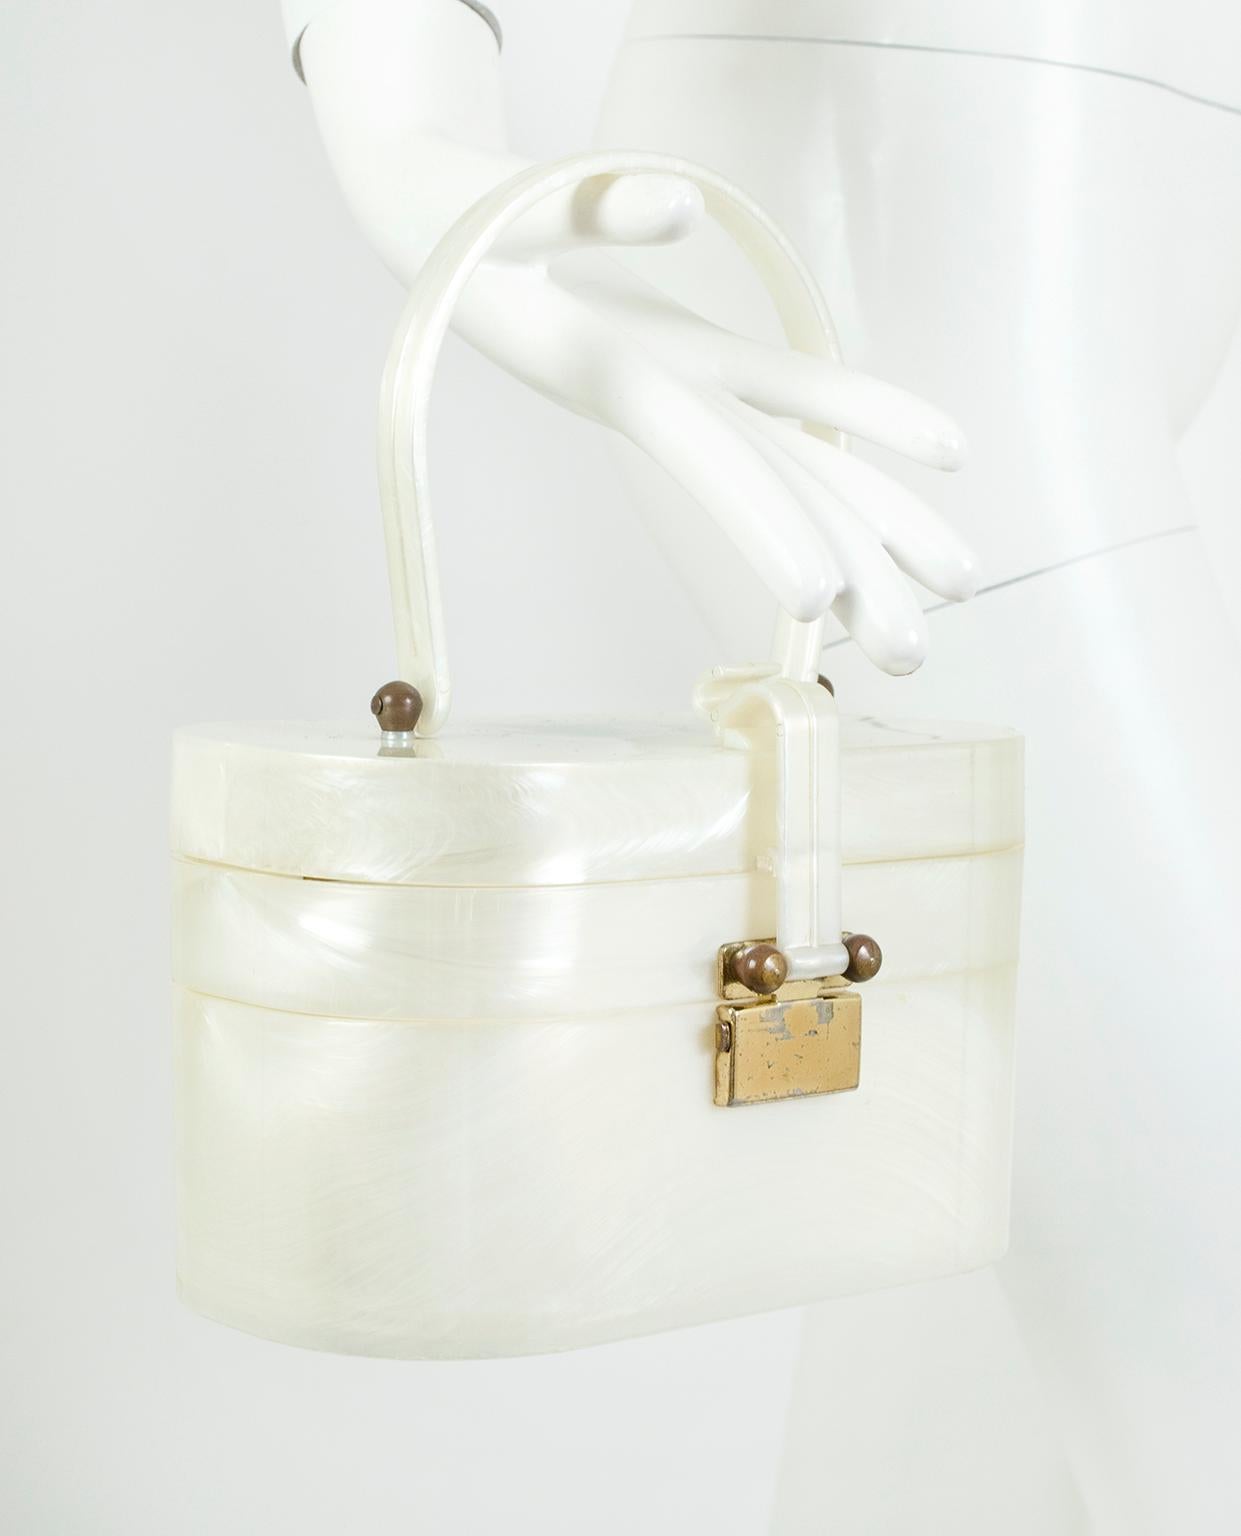 L'or des banlieues d'après-guerre, ce sac à main nostalgique en forme de boîte est un bel objet de conversation fonctionnel grâce à son intérieur spacieux et à son astucieux design à deux étages. Le couvercle en lucite s'ouvre pour révéler un